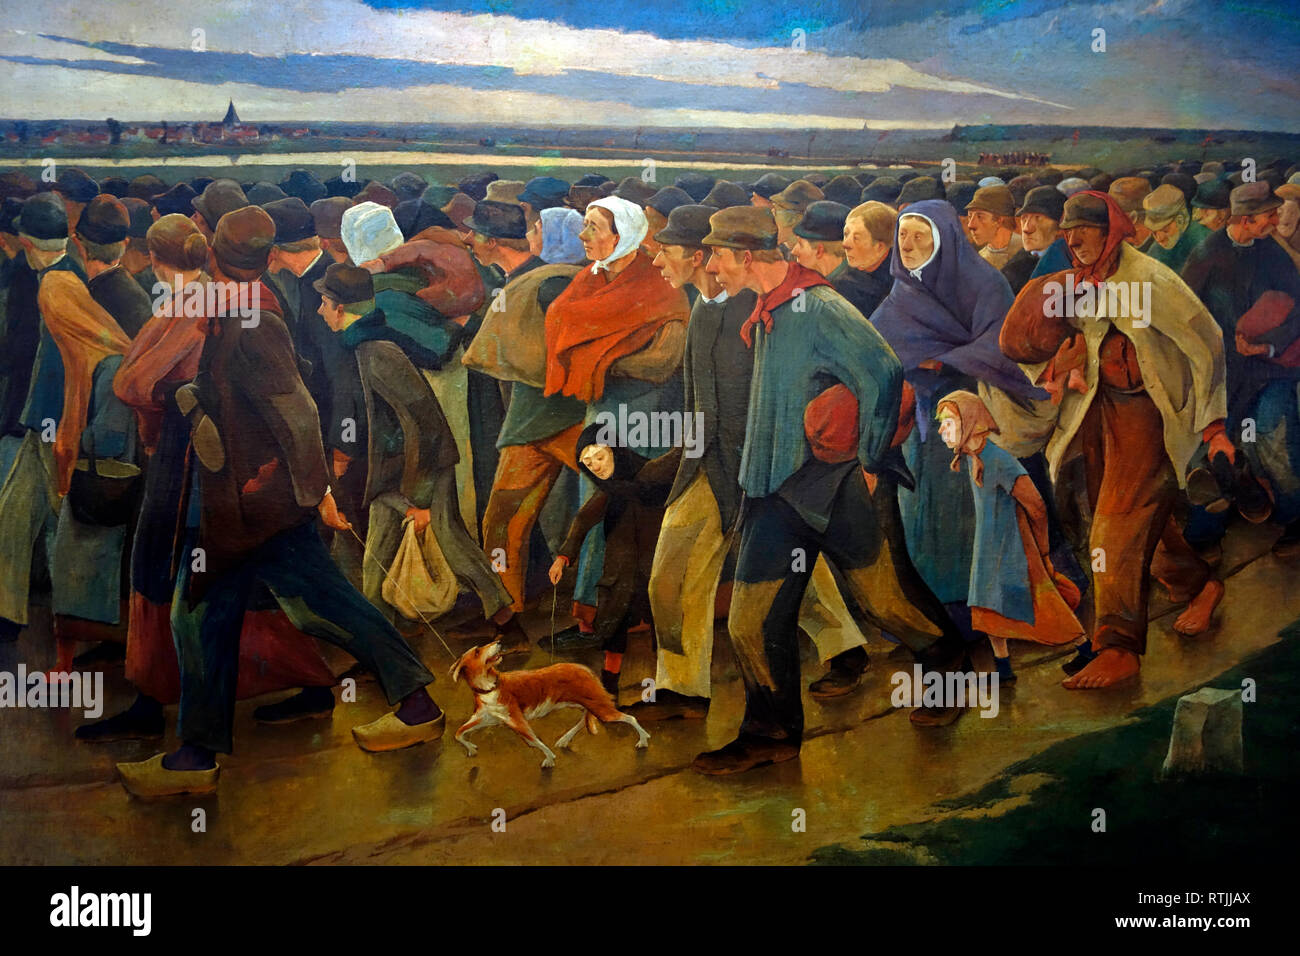 Peinture 1896 Landverhuizers / émigrants par le peintre belge Eugène Laermans Banque D'Images